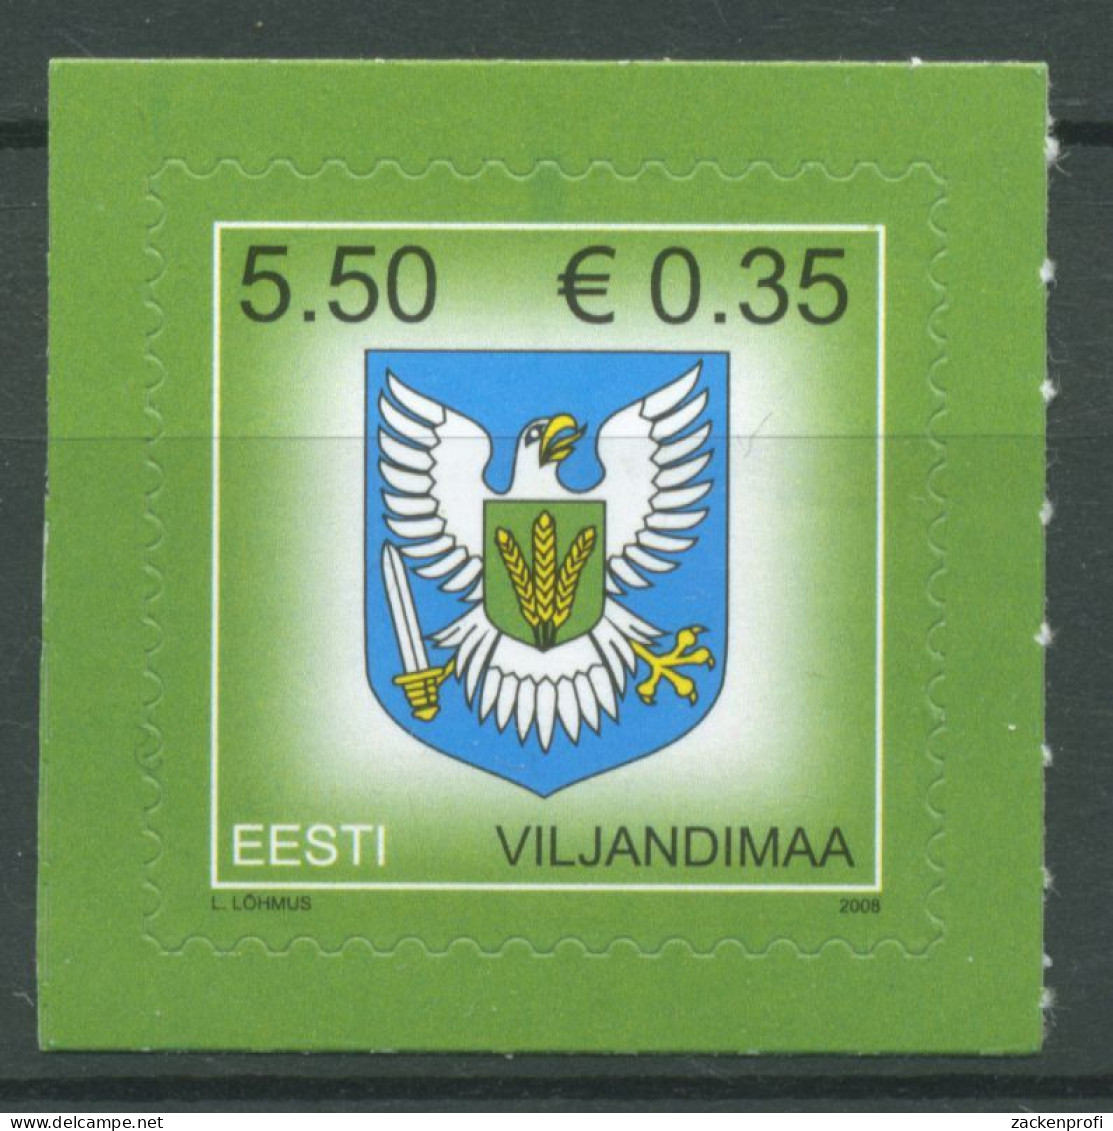 Estland 2008 Freimarke Wappen 612 Postfrisch - Estonia